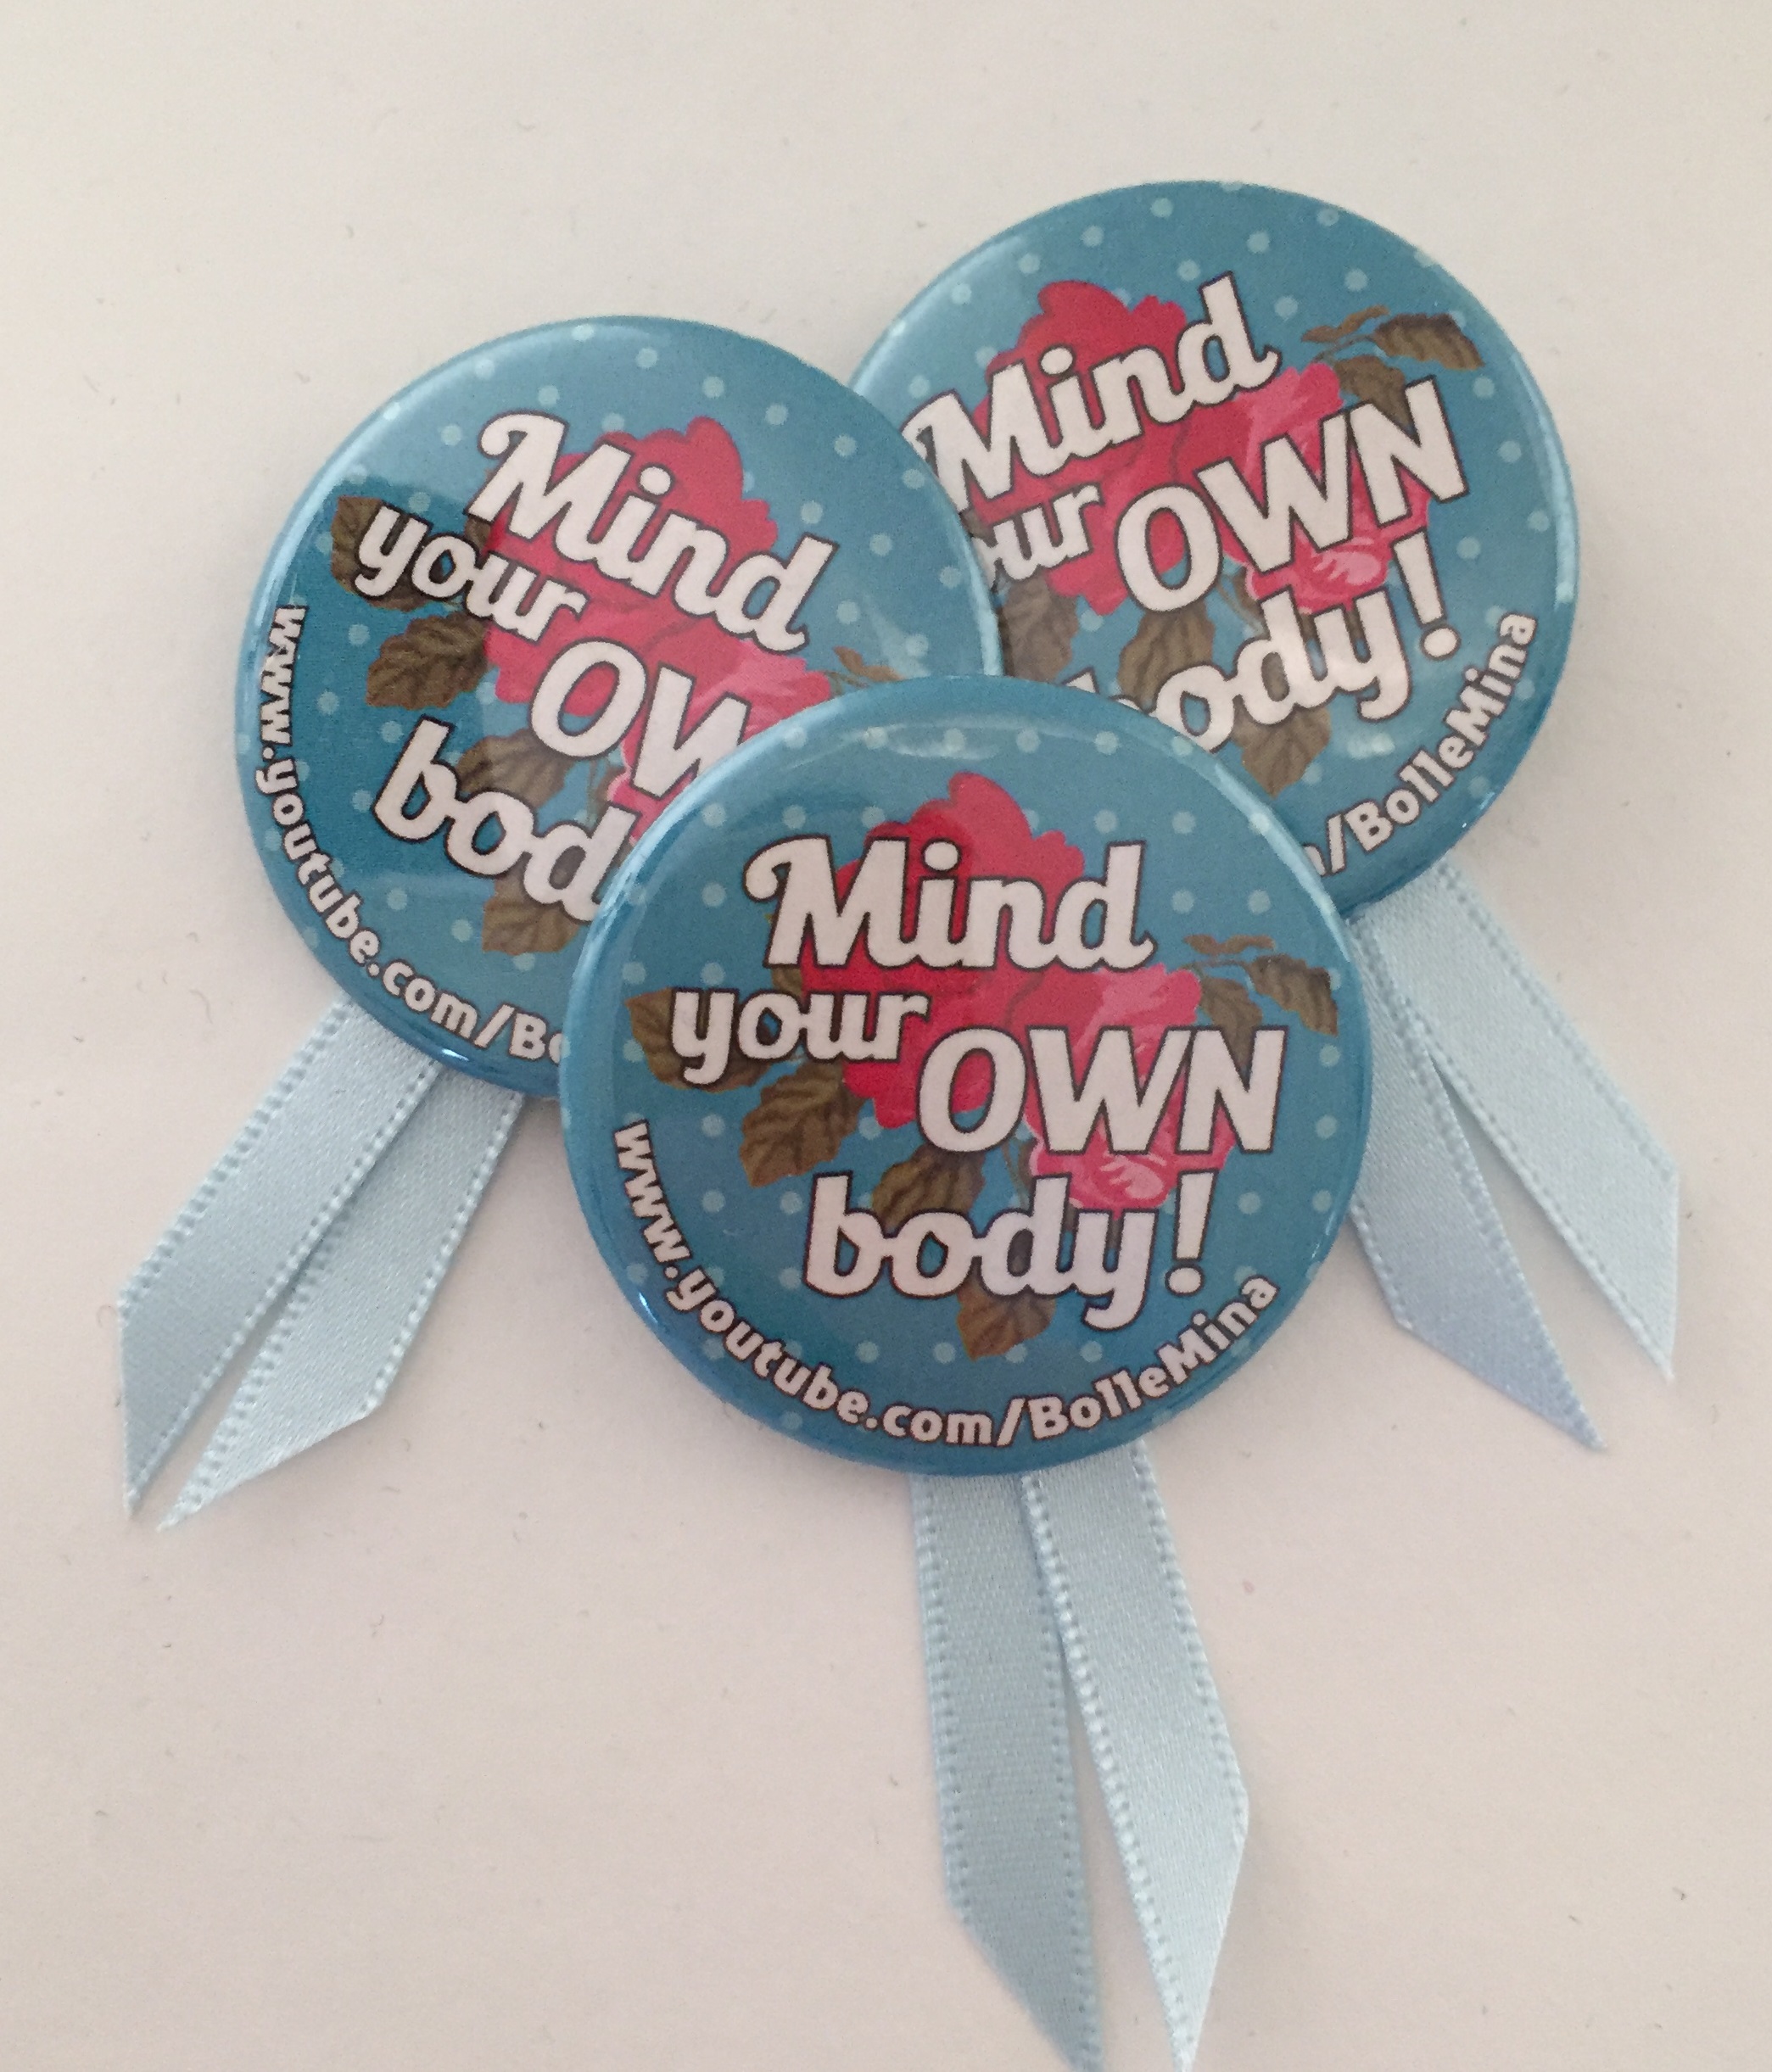 Foto van drie buttons met de slogan Mind your own body erop. Met lichtblauwe satijnen lintjes eronder geplakt. Dit is het symbool van International No Diet Day